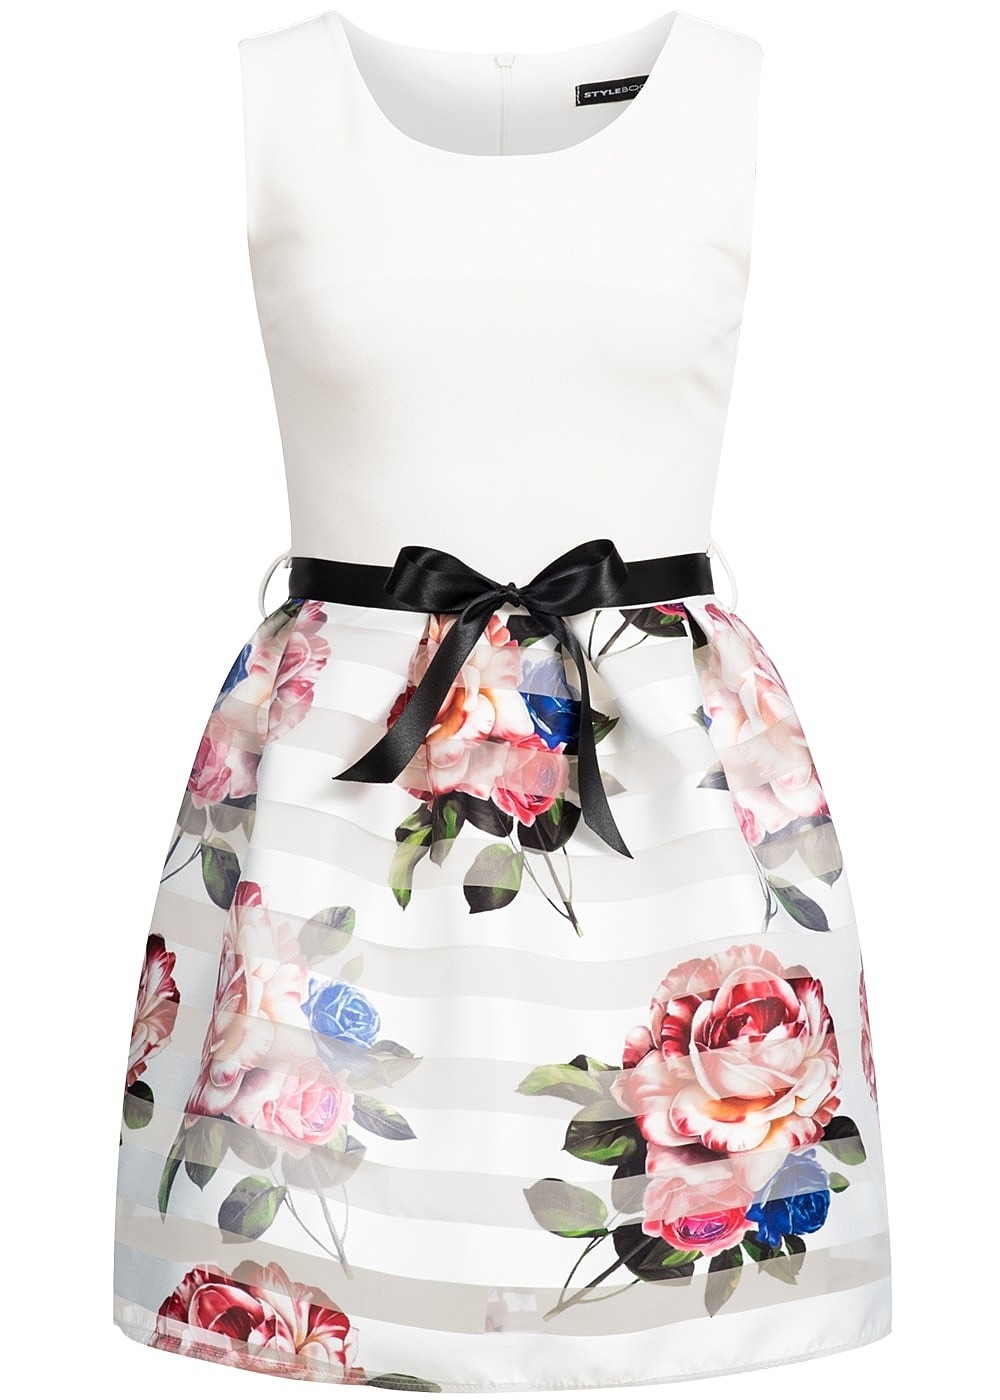 Formal Leicht Kleid Weiß Mit Blumen VertriebFormal Genial Kleid Weiß Mit Blumen Boutique